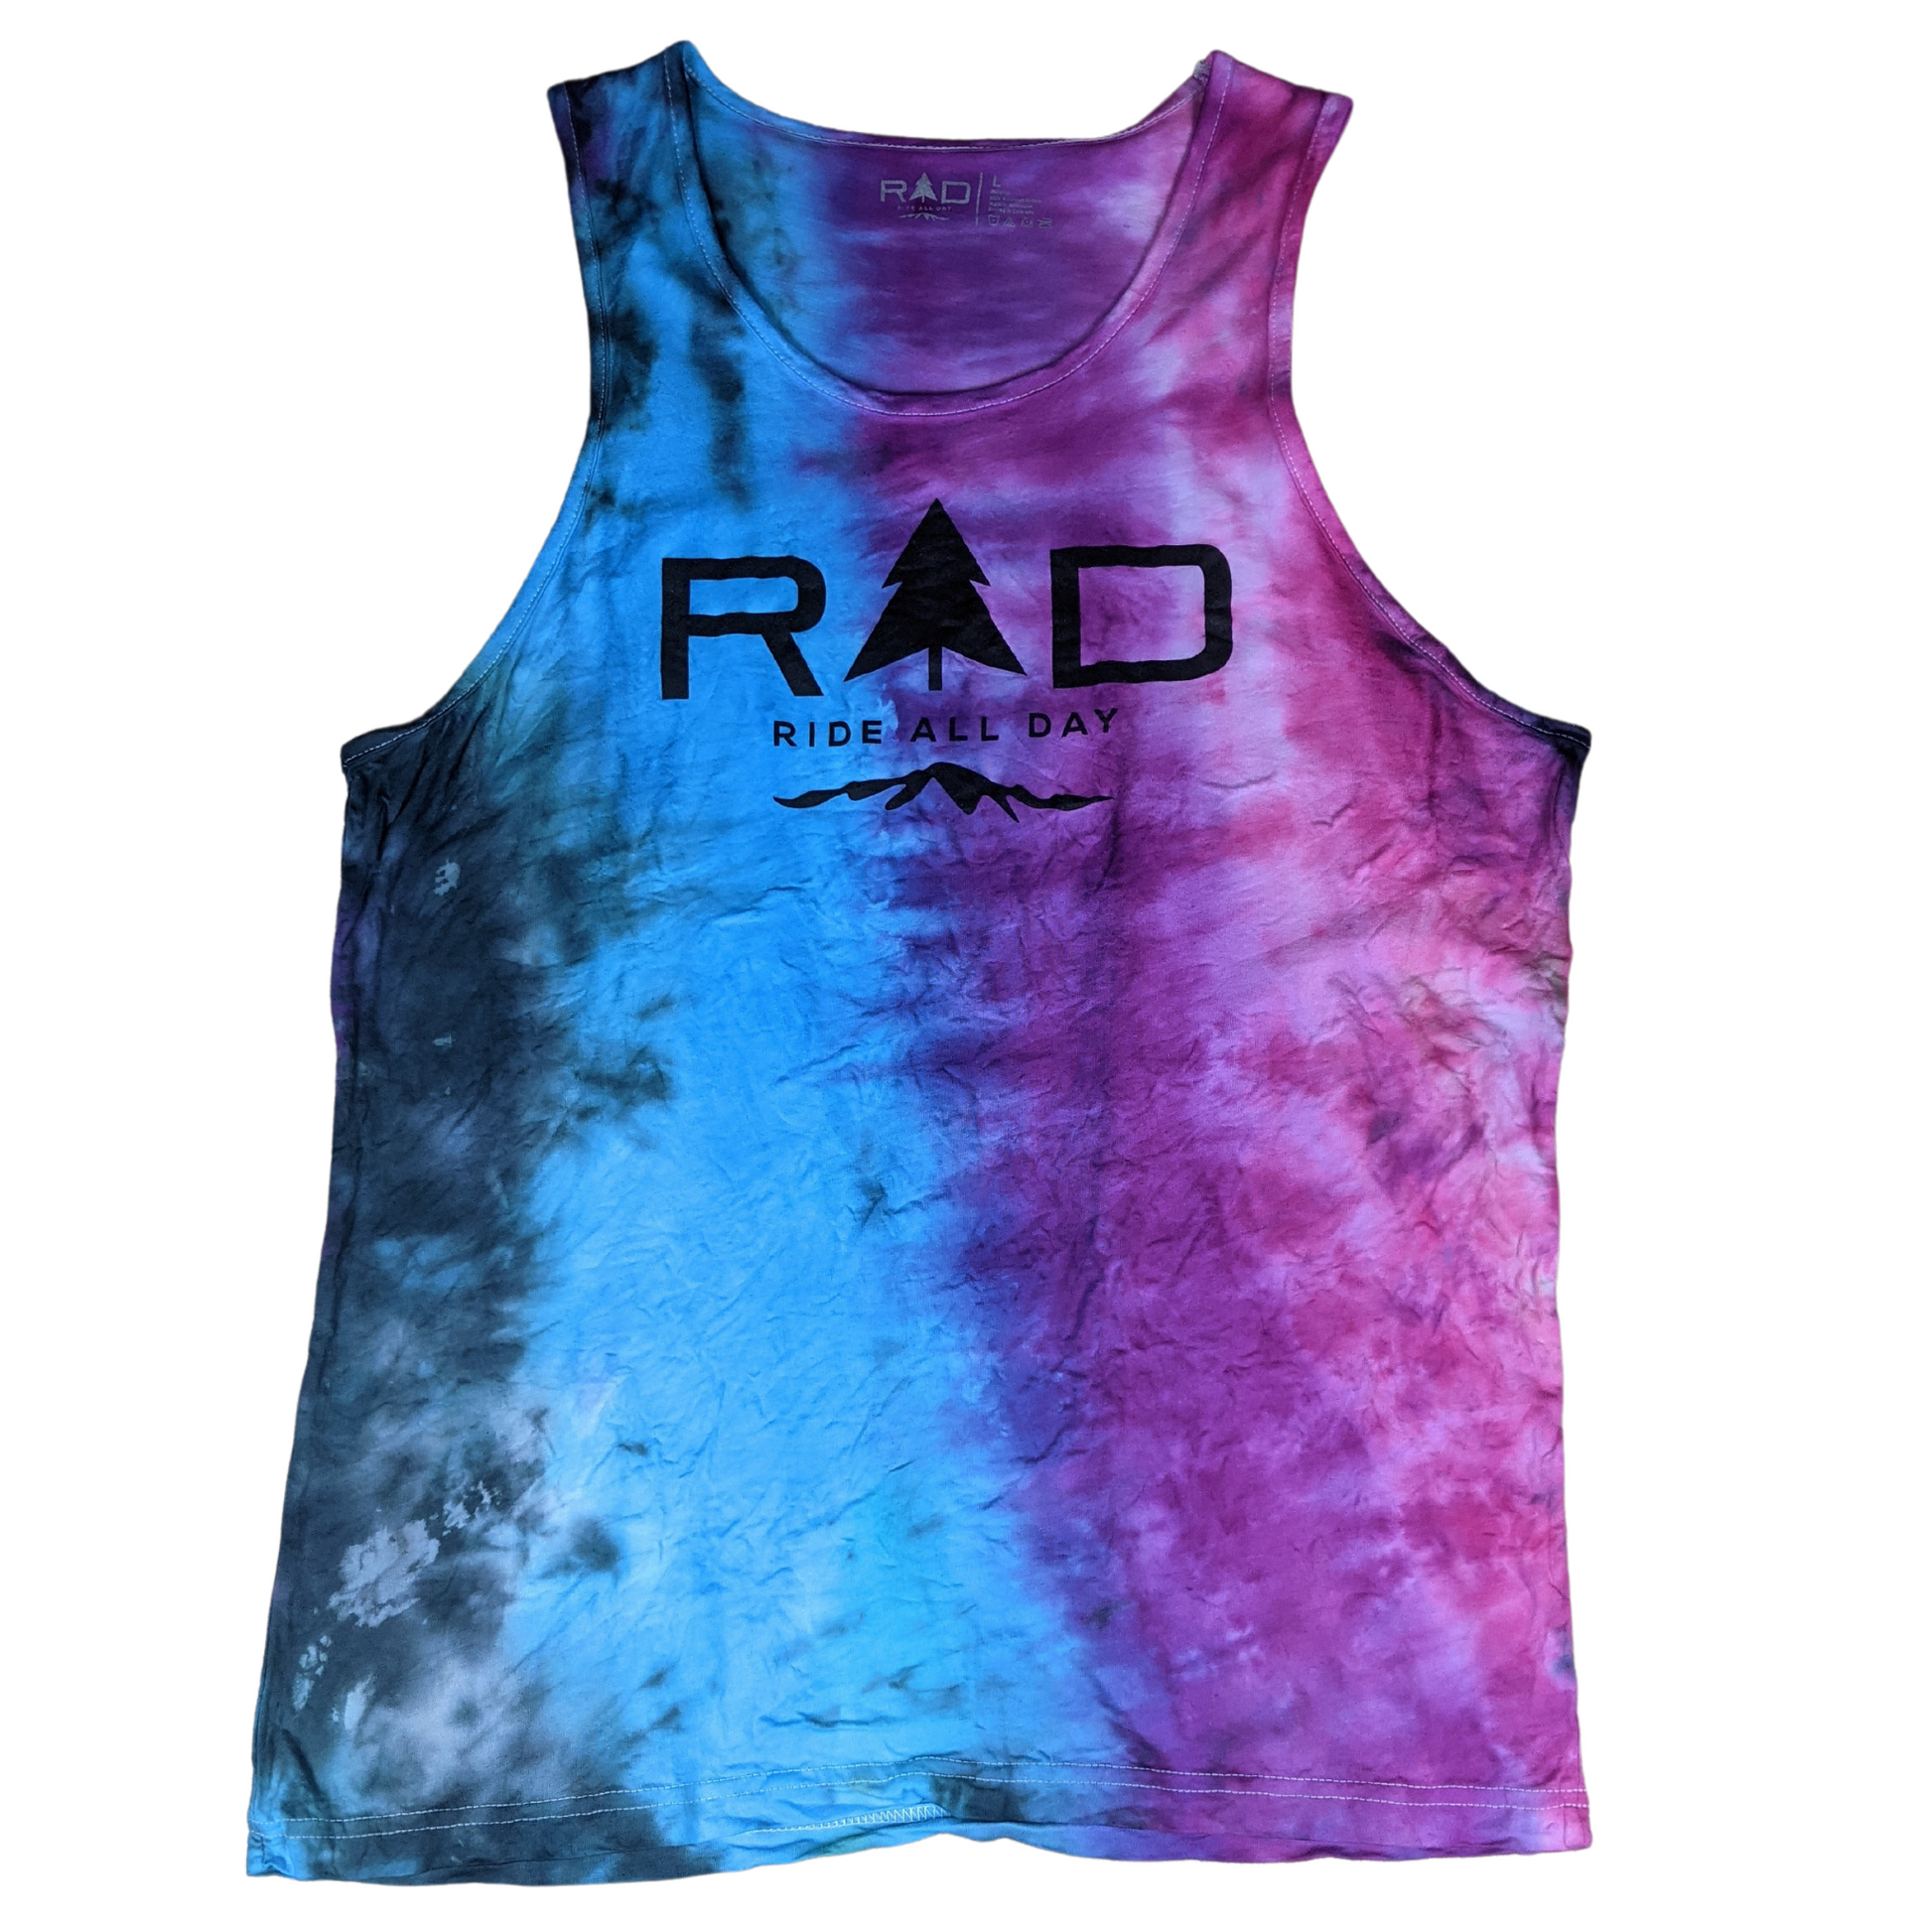 RAD mens tank top in ombre tie-dye pattern